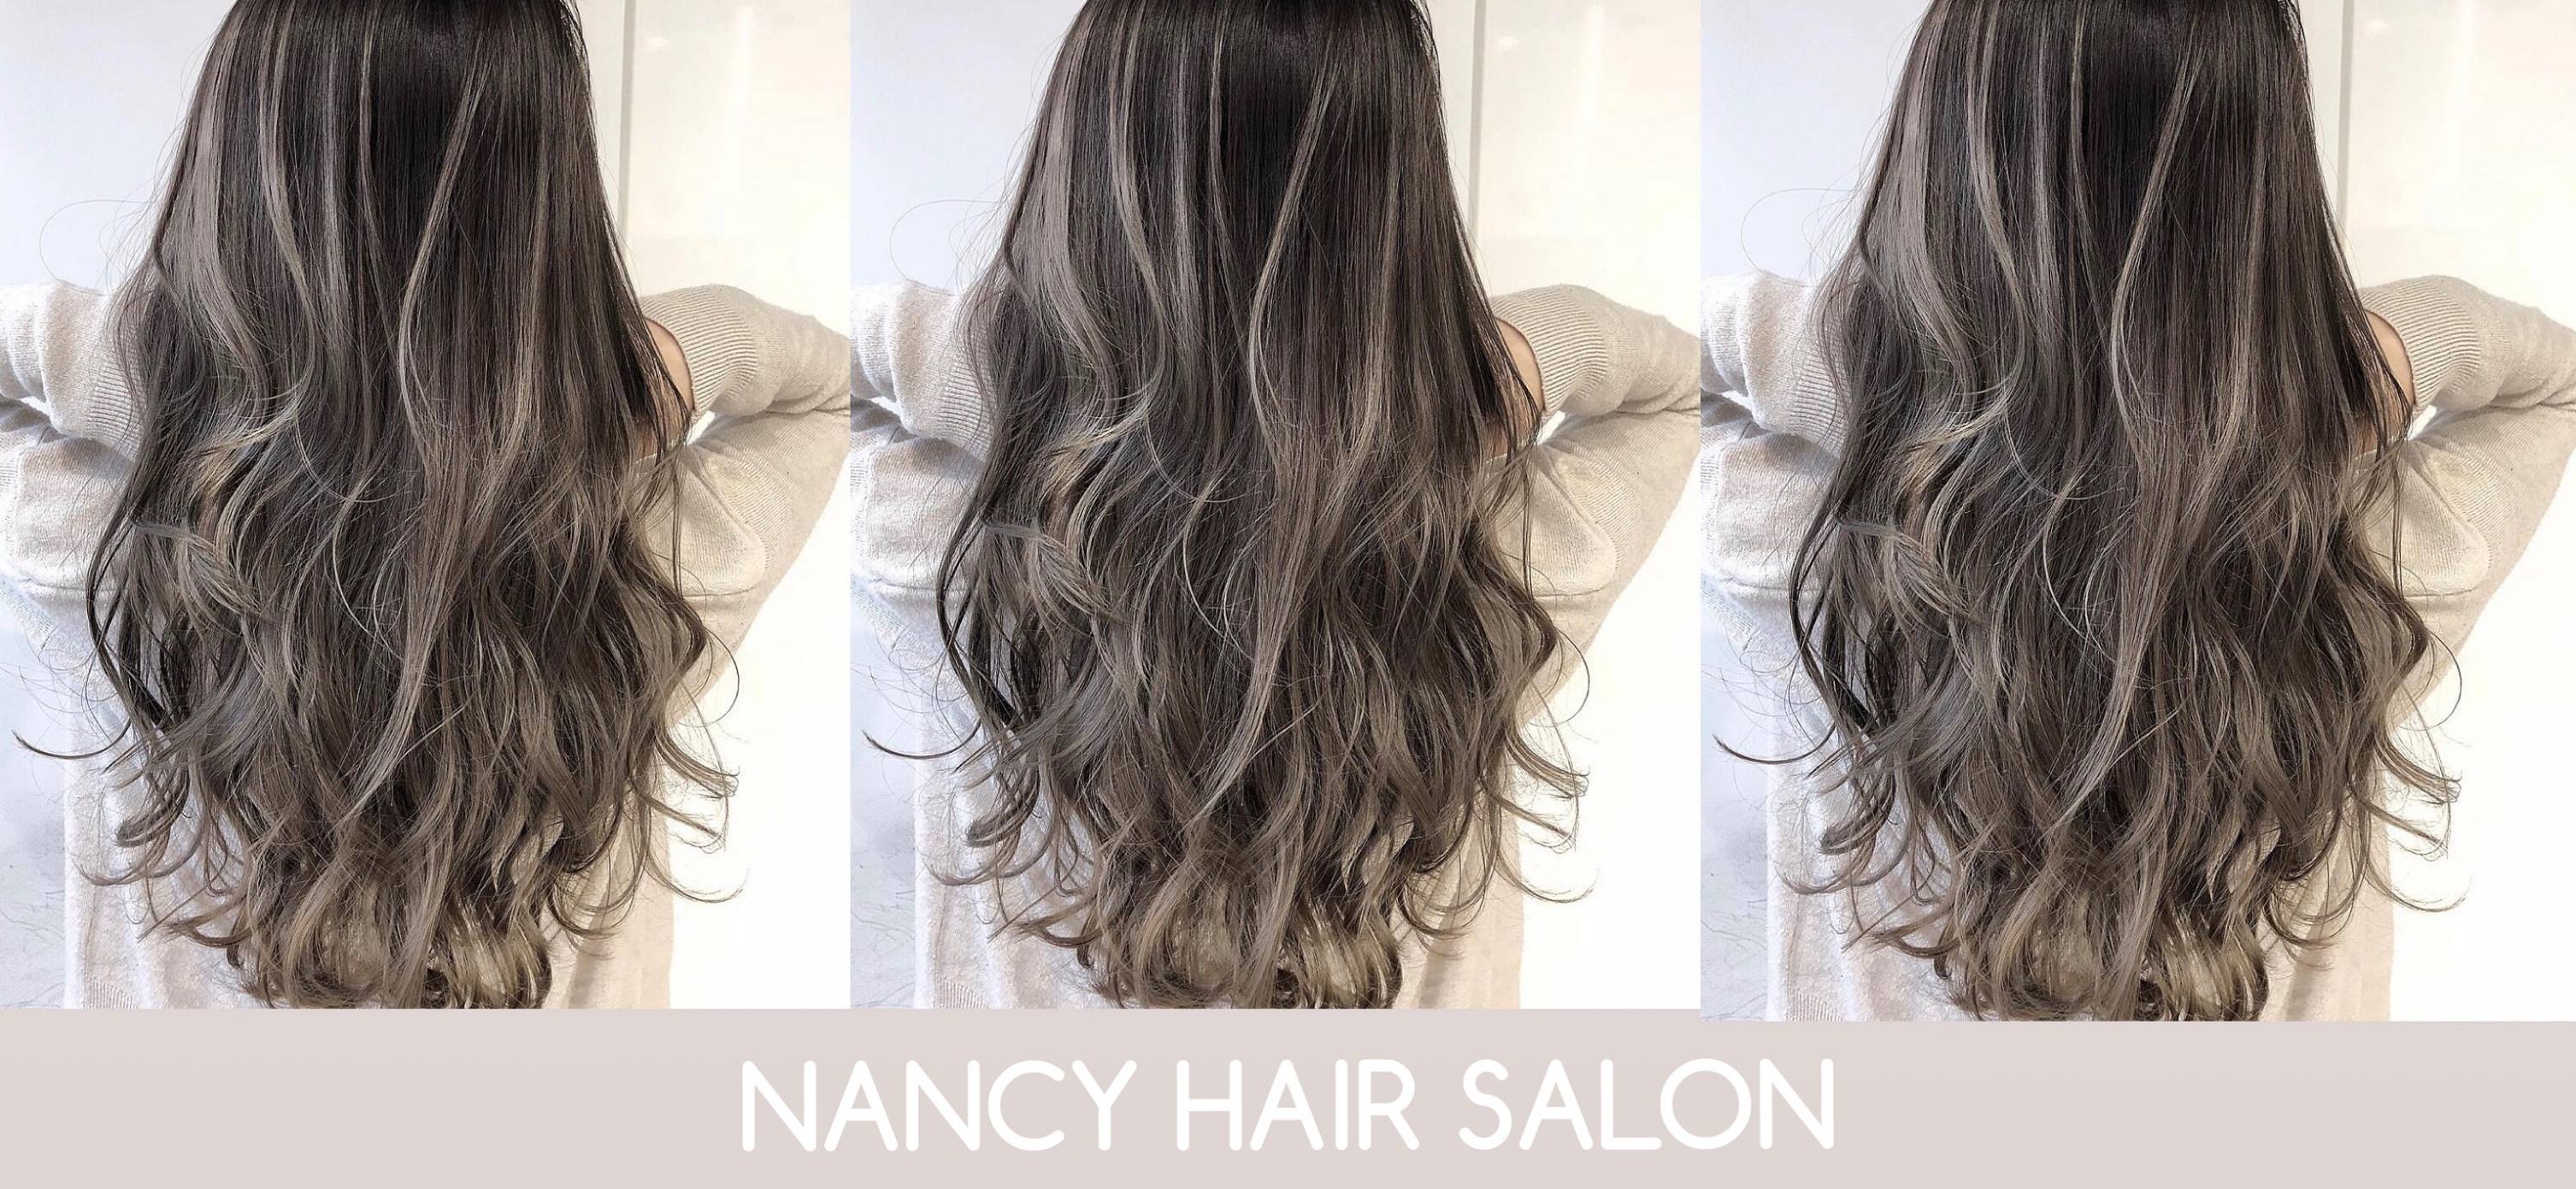 Review NANCY HAIR SALON chi tiết nhất